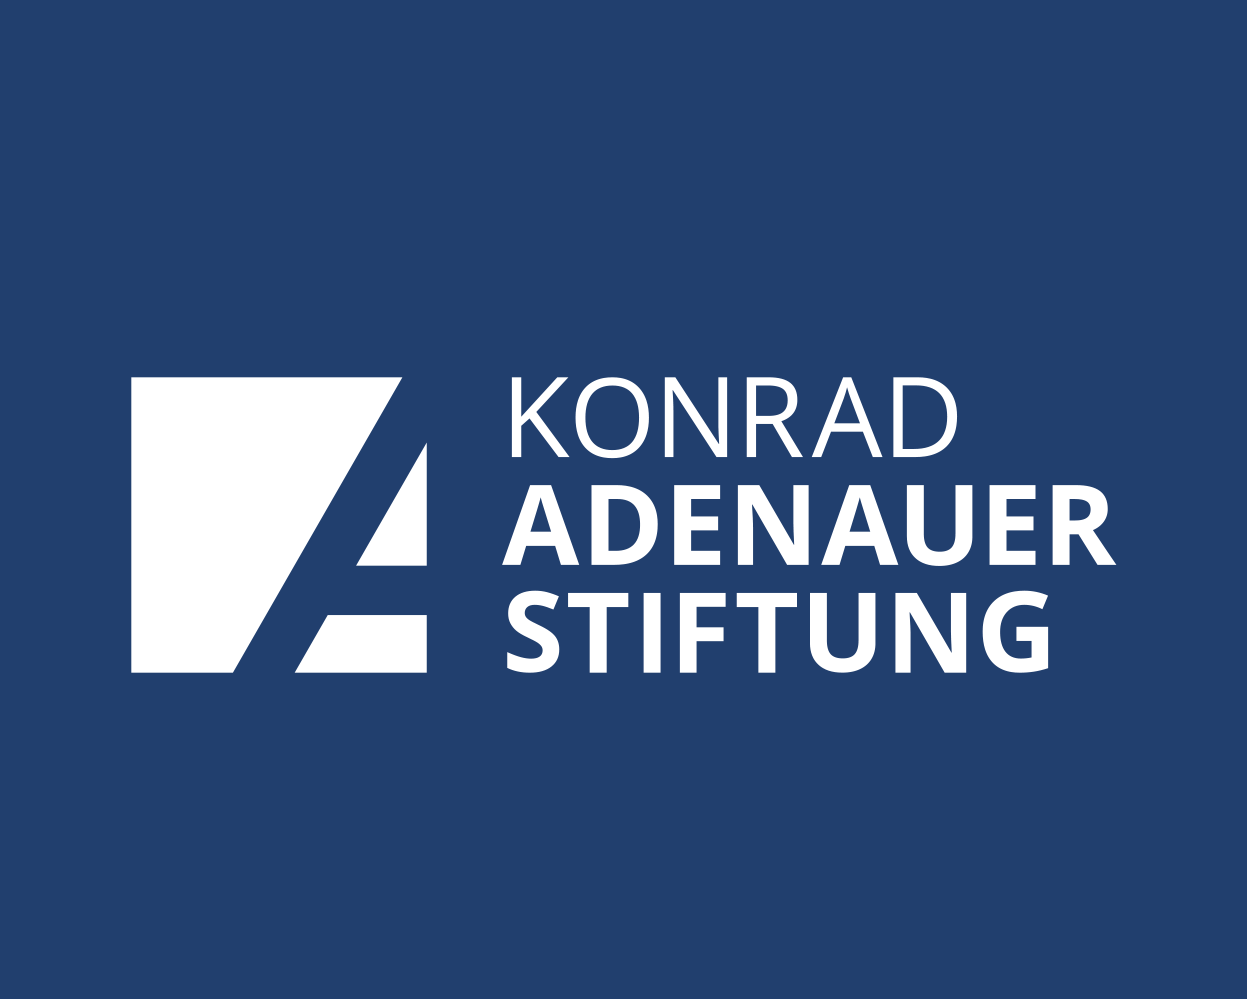 Konrad Adenauer-Stiftung lance un appel à candidatures pour rejoindre l'Académie Européenne d'automne